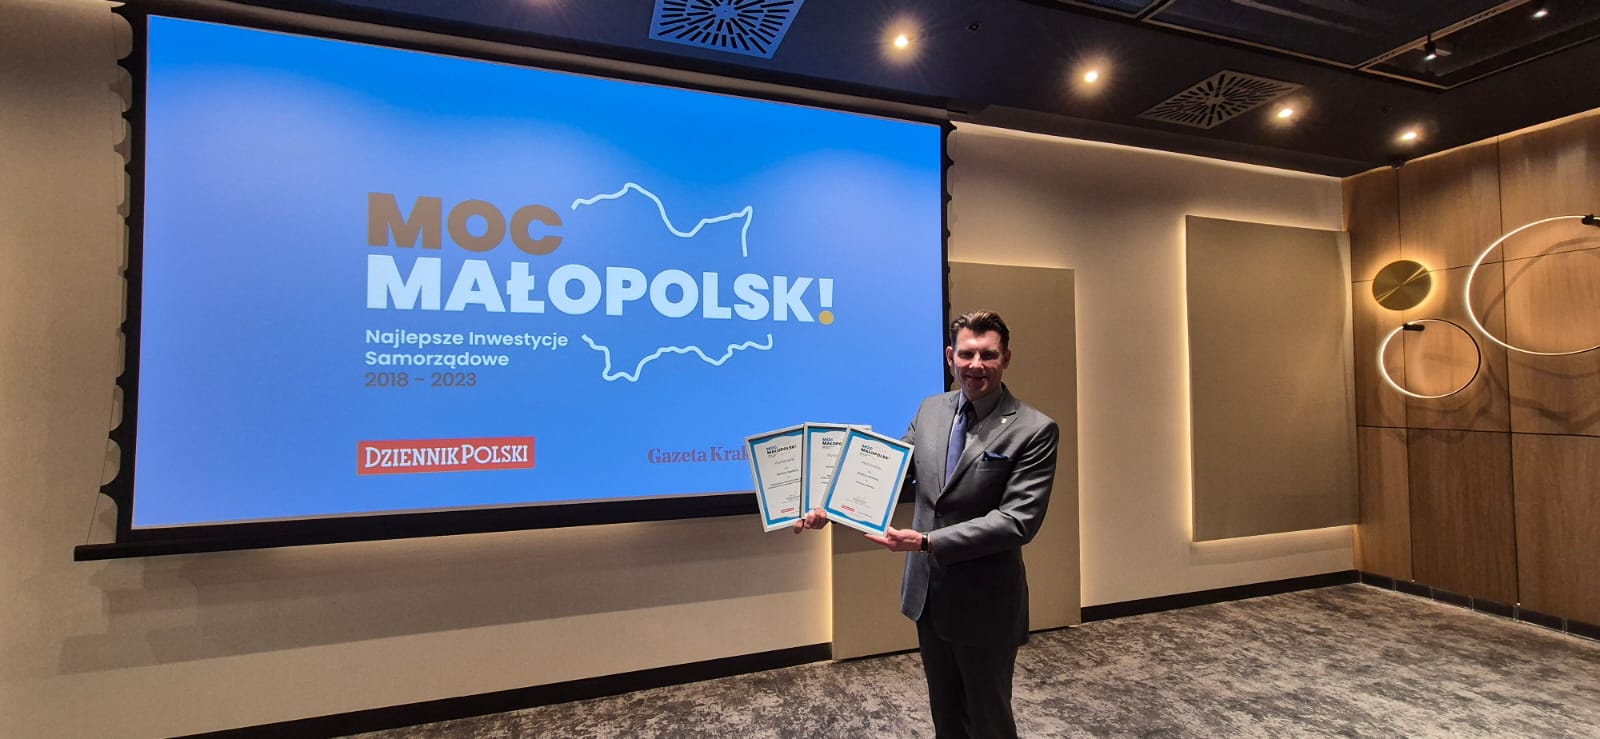 „Inwestycyjna Moc Małopolski” – aż 3 wyróżnienia dla Miasta Gorlice!